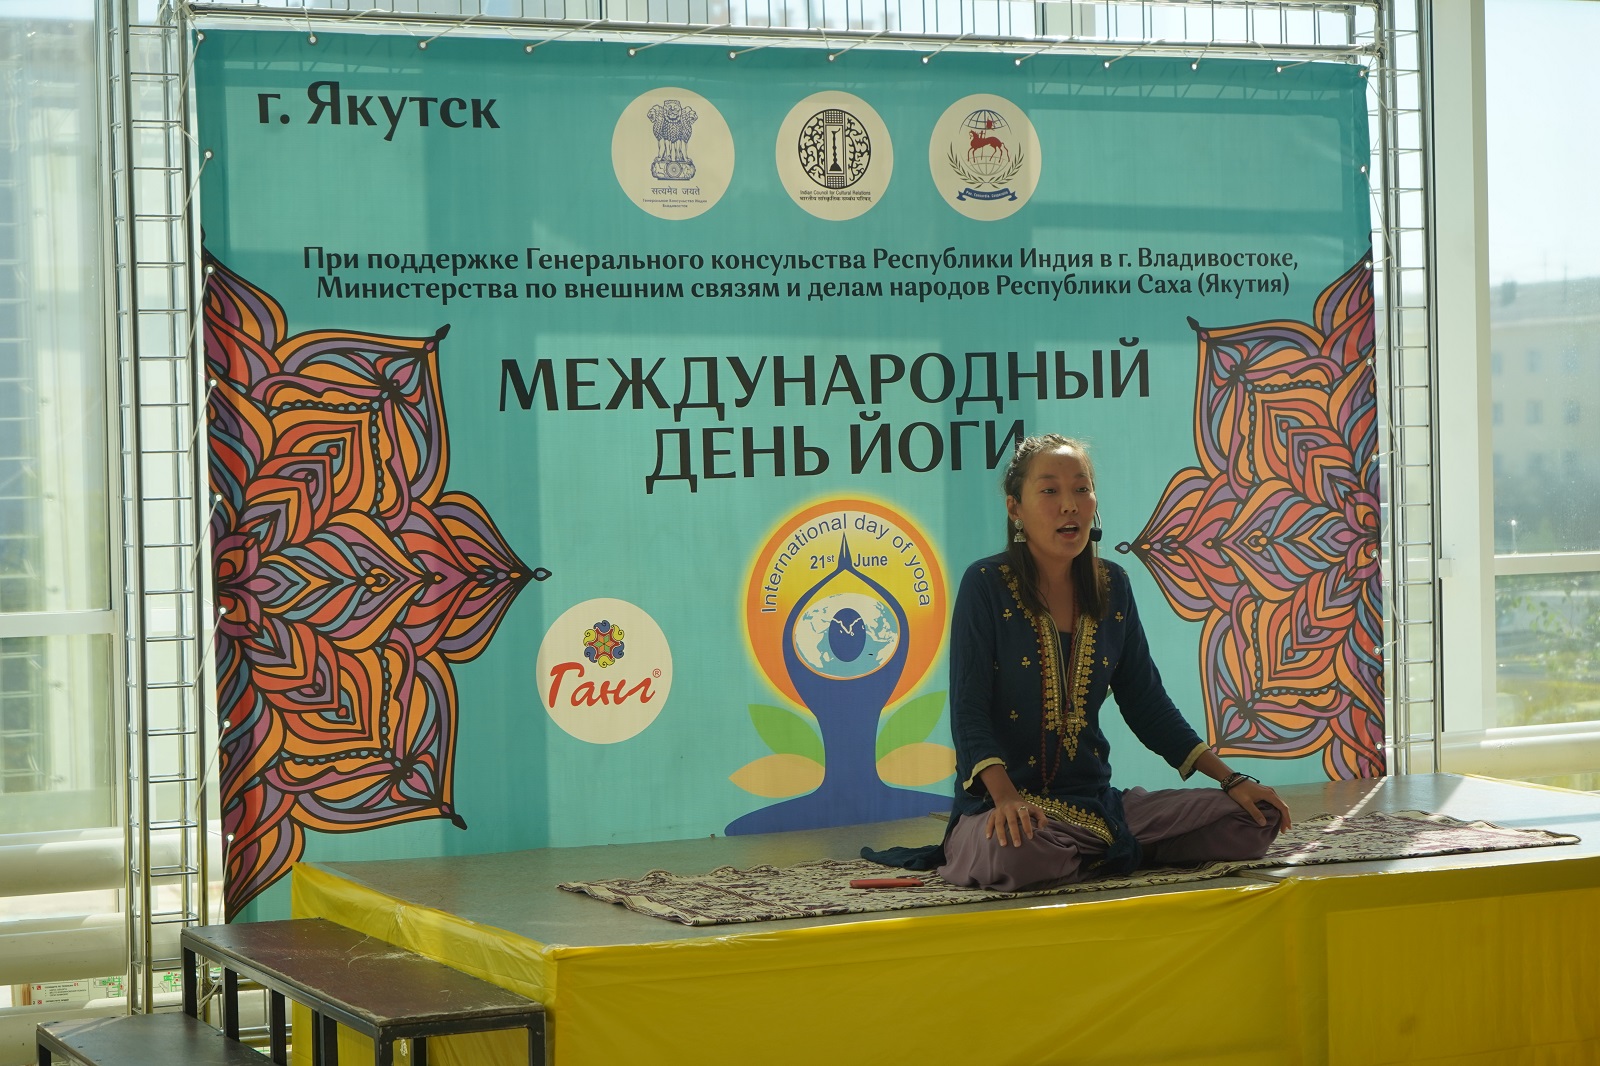 В Якутске прошёл международный день йоги